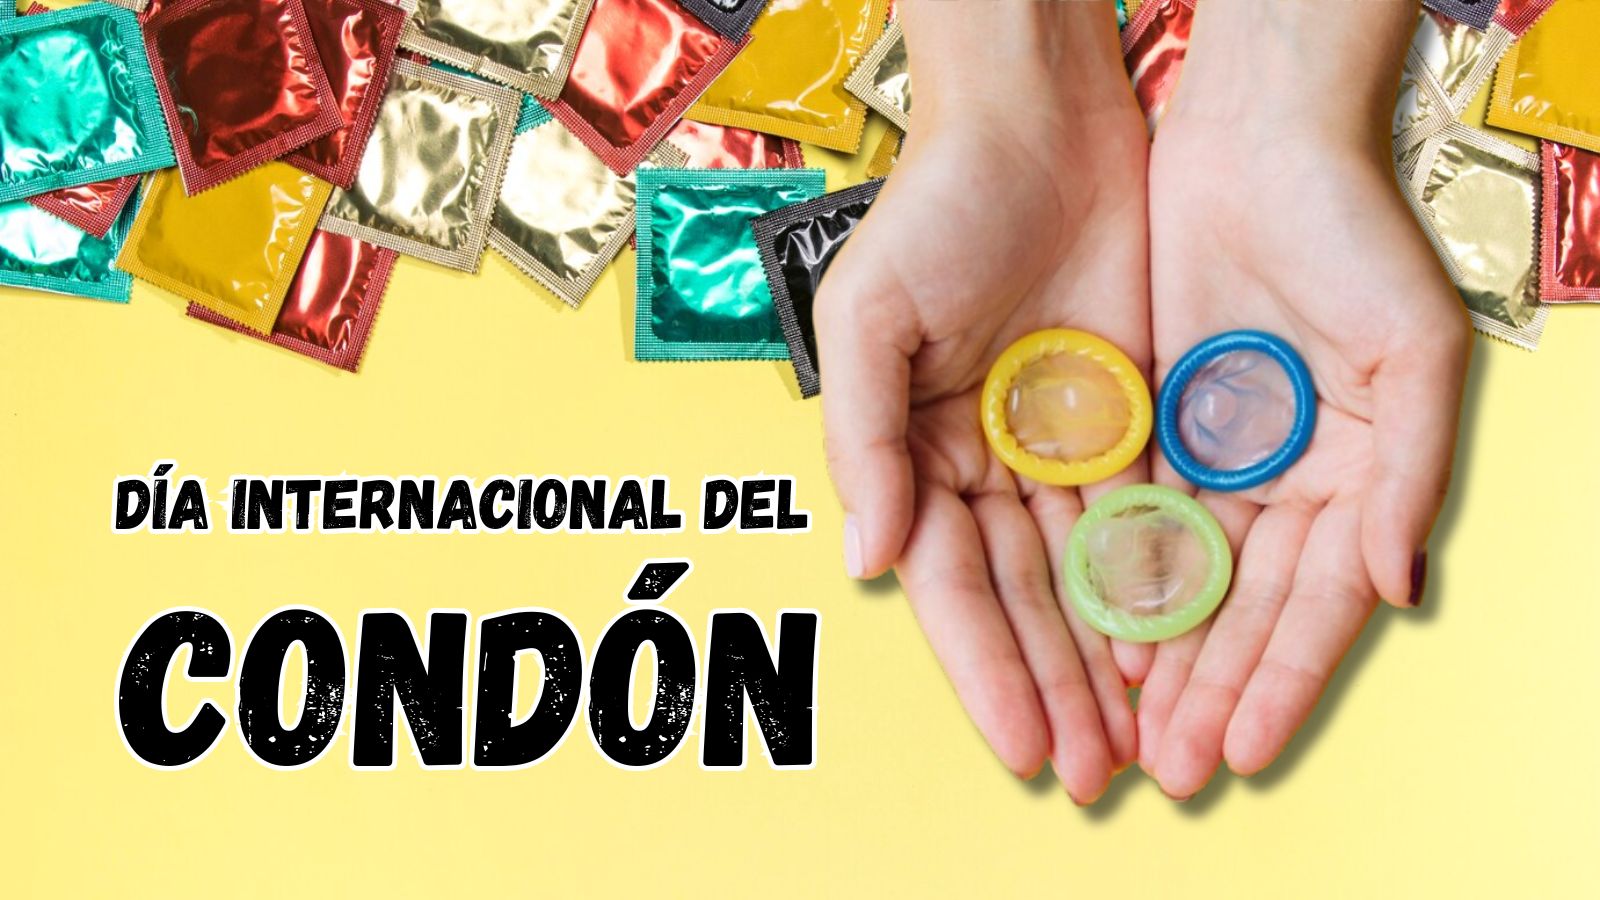 Día internacional del condón